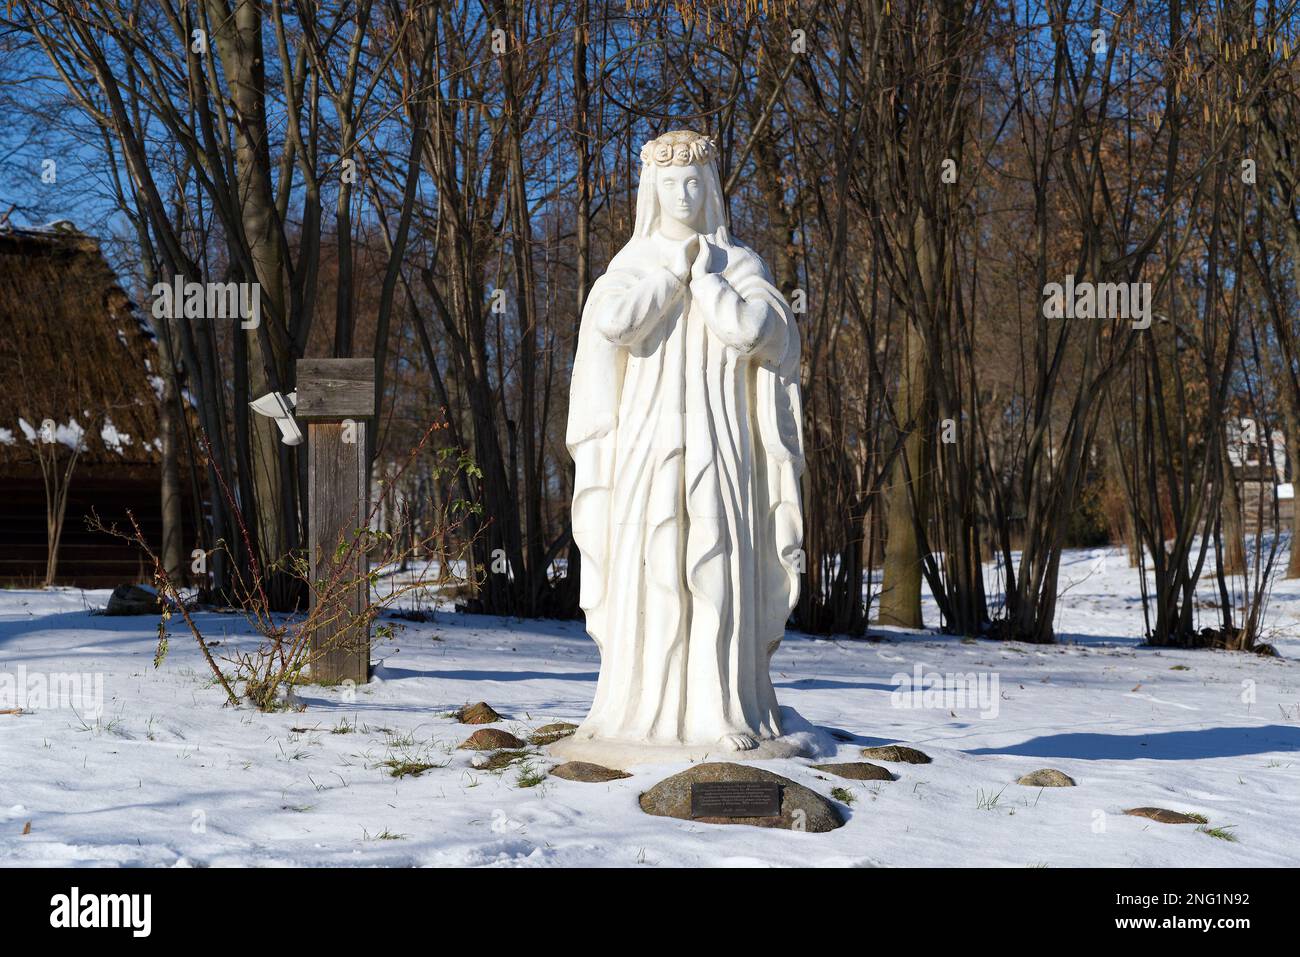 Lublino, Polonia. 08 febbraio 2023. Figura bianca della Vergine Maria nella neve fuori dalla vecchia chiesa in inverno. Foto Stock